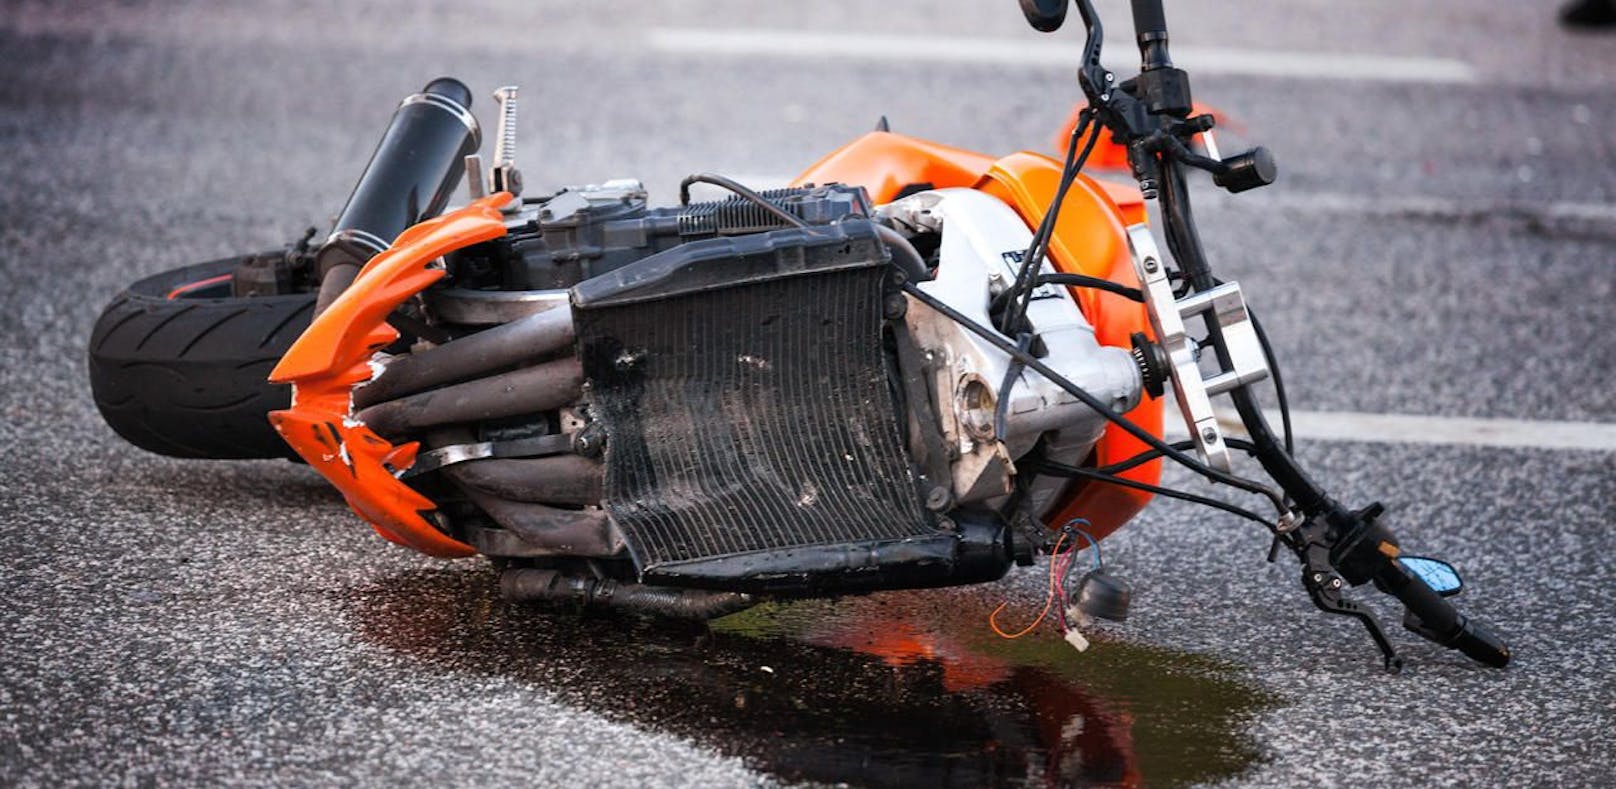 War Videodreh schuld an schwerem Bike-Unfall?